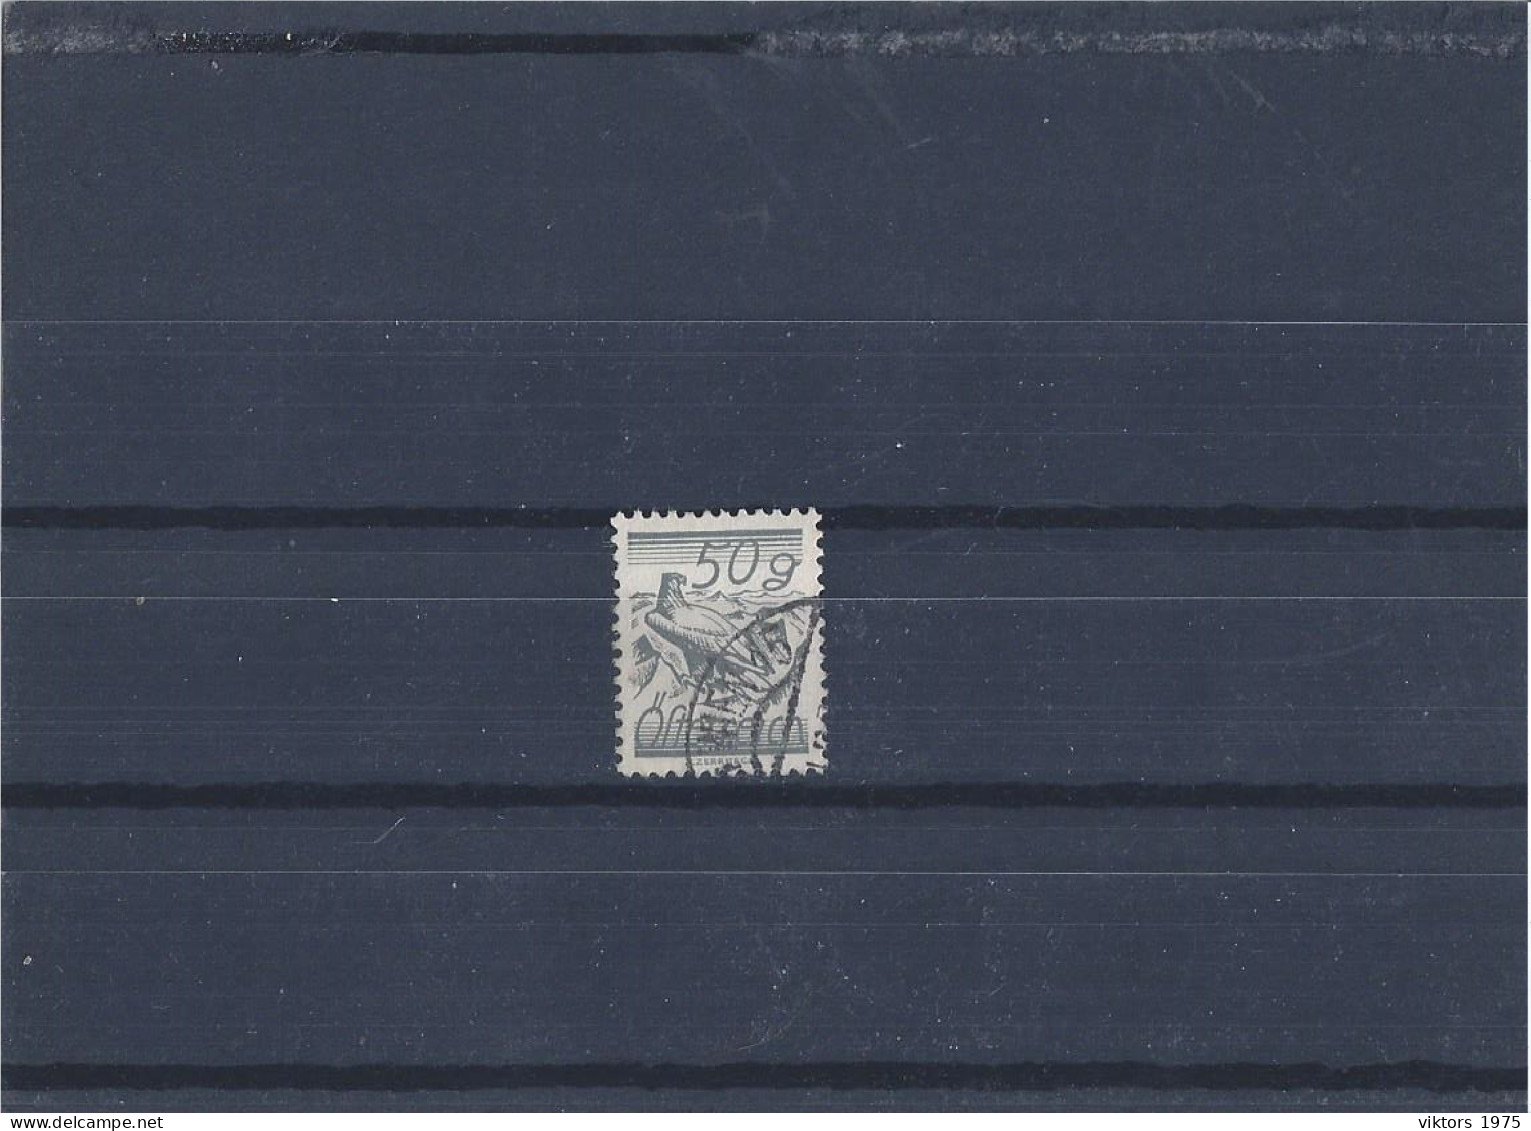 Used Stamp Nr.463 In MICHEL Catalog - Usati